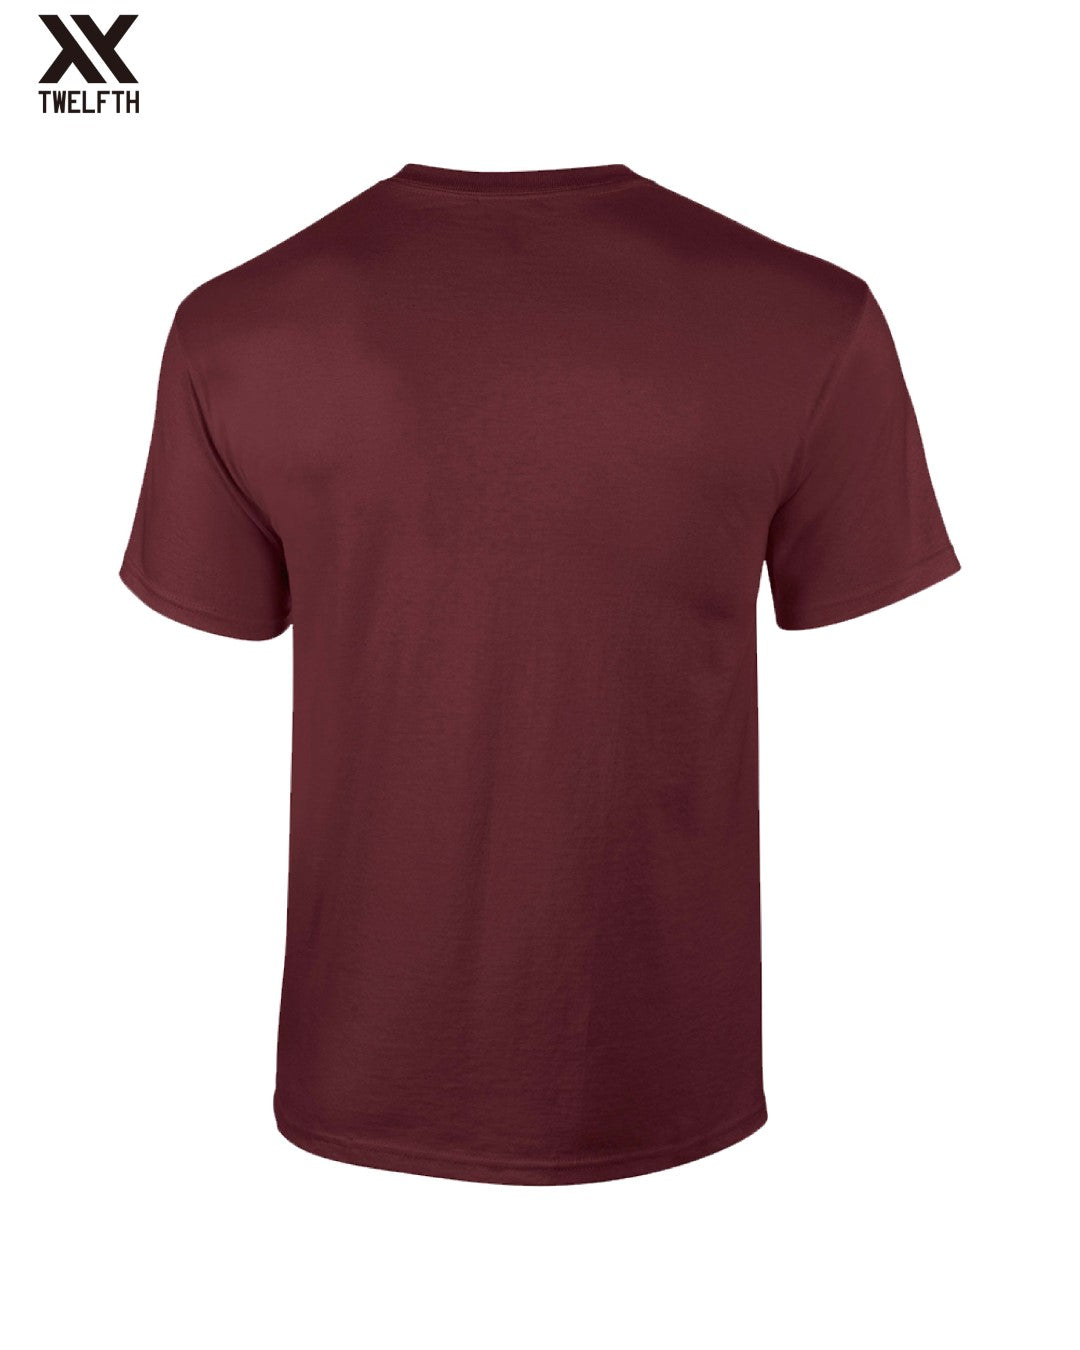 Torino Crest T-Shirt - Mens